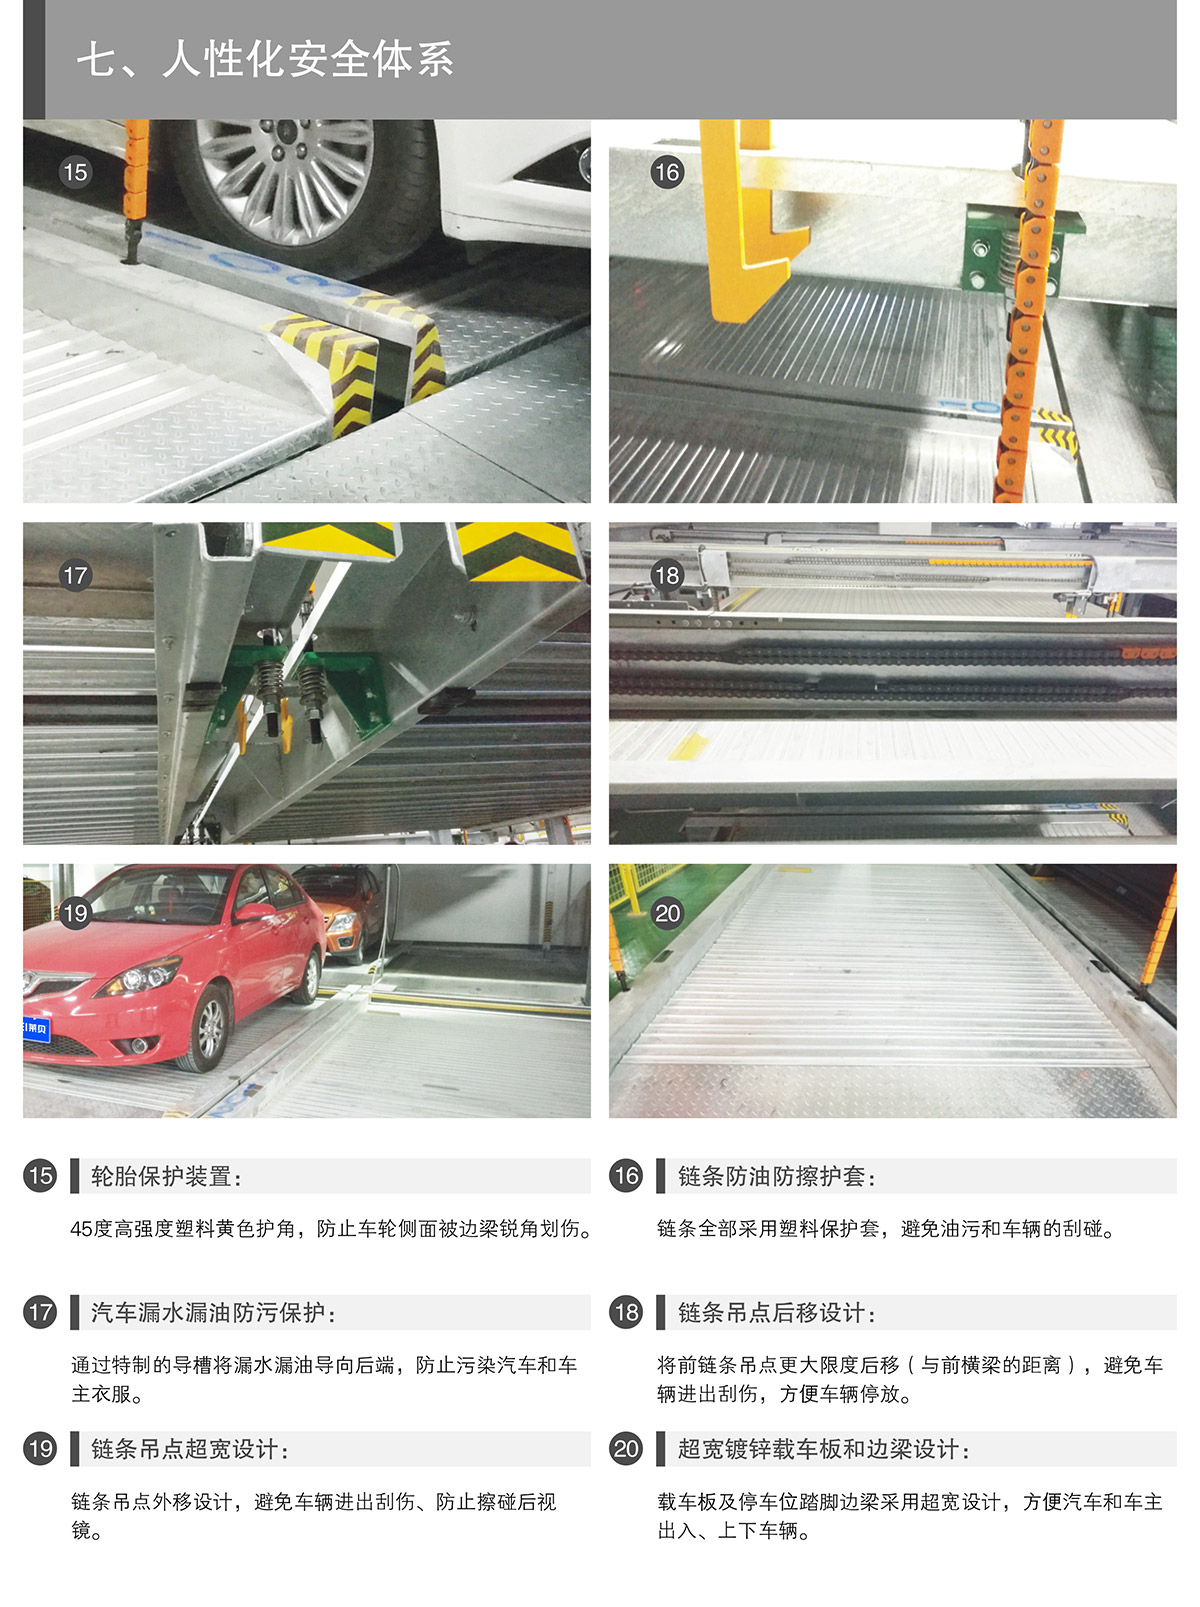 四川单列PSH2二层升降横移立体停车设备人性化安全体系.jpg